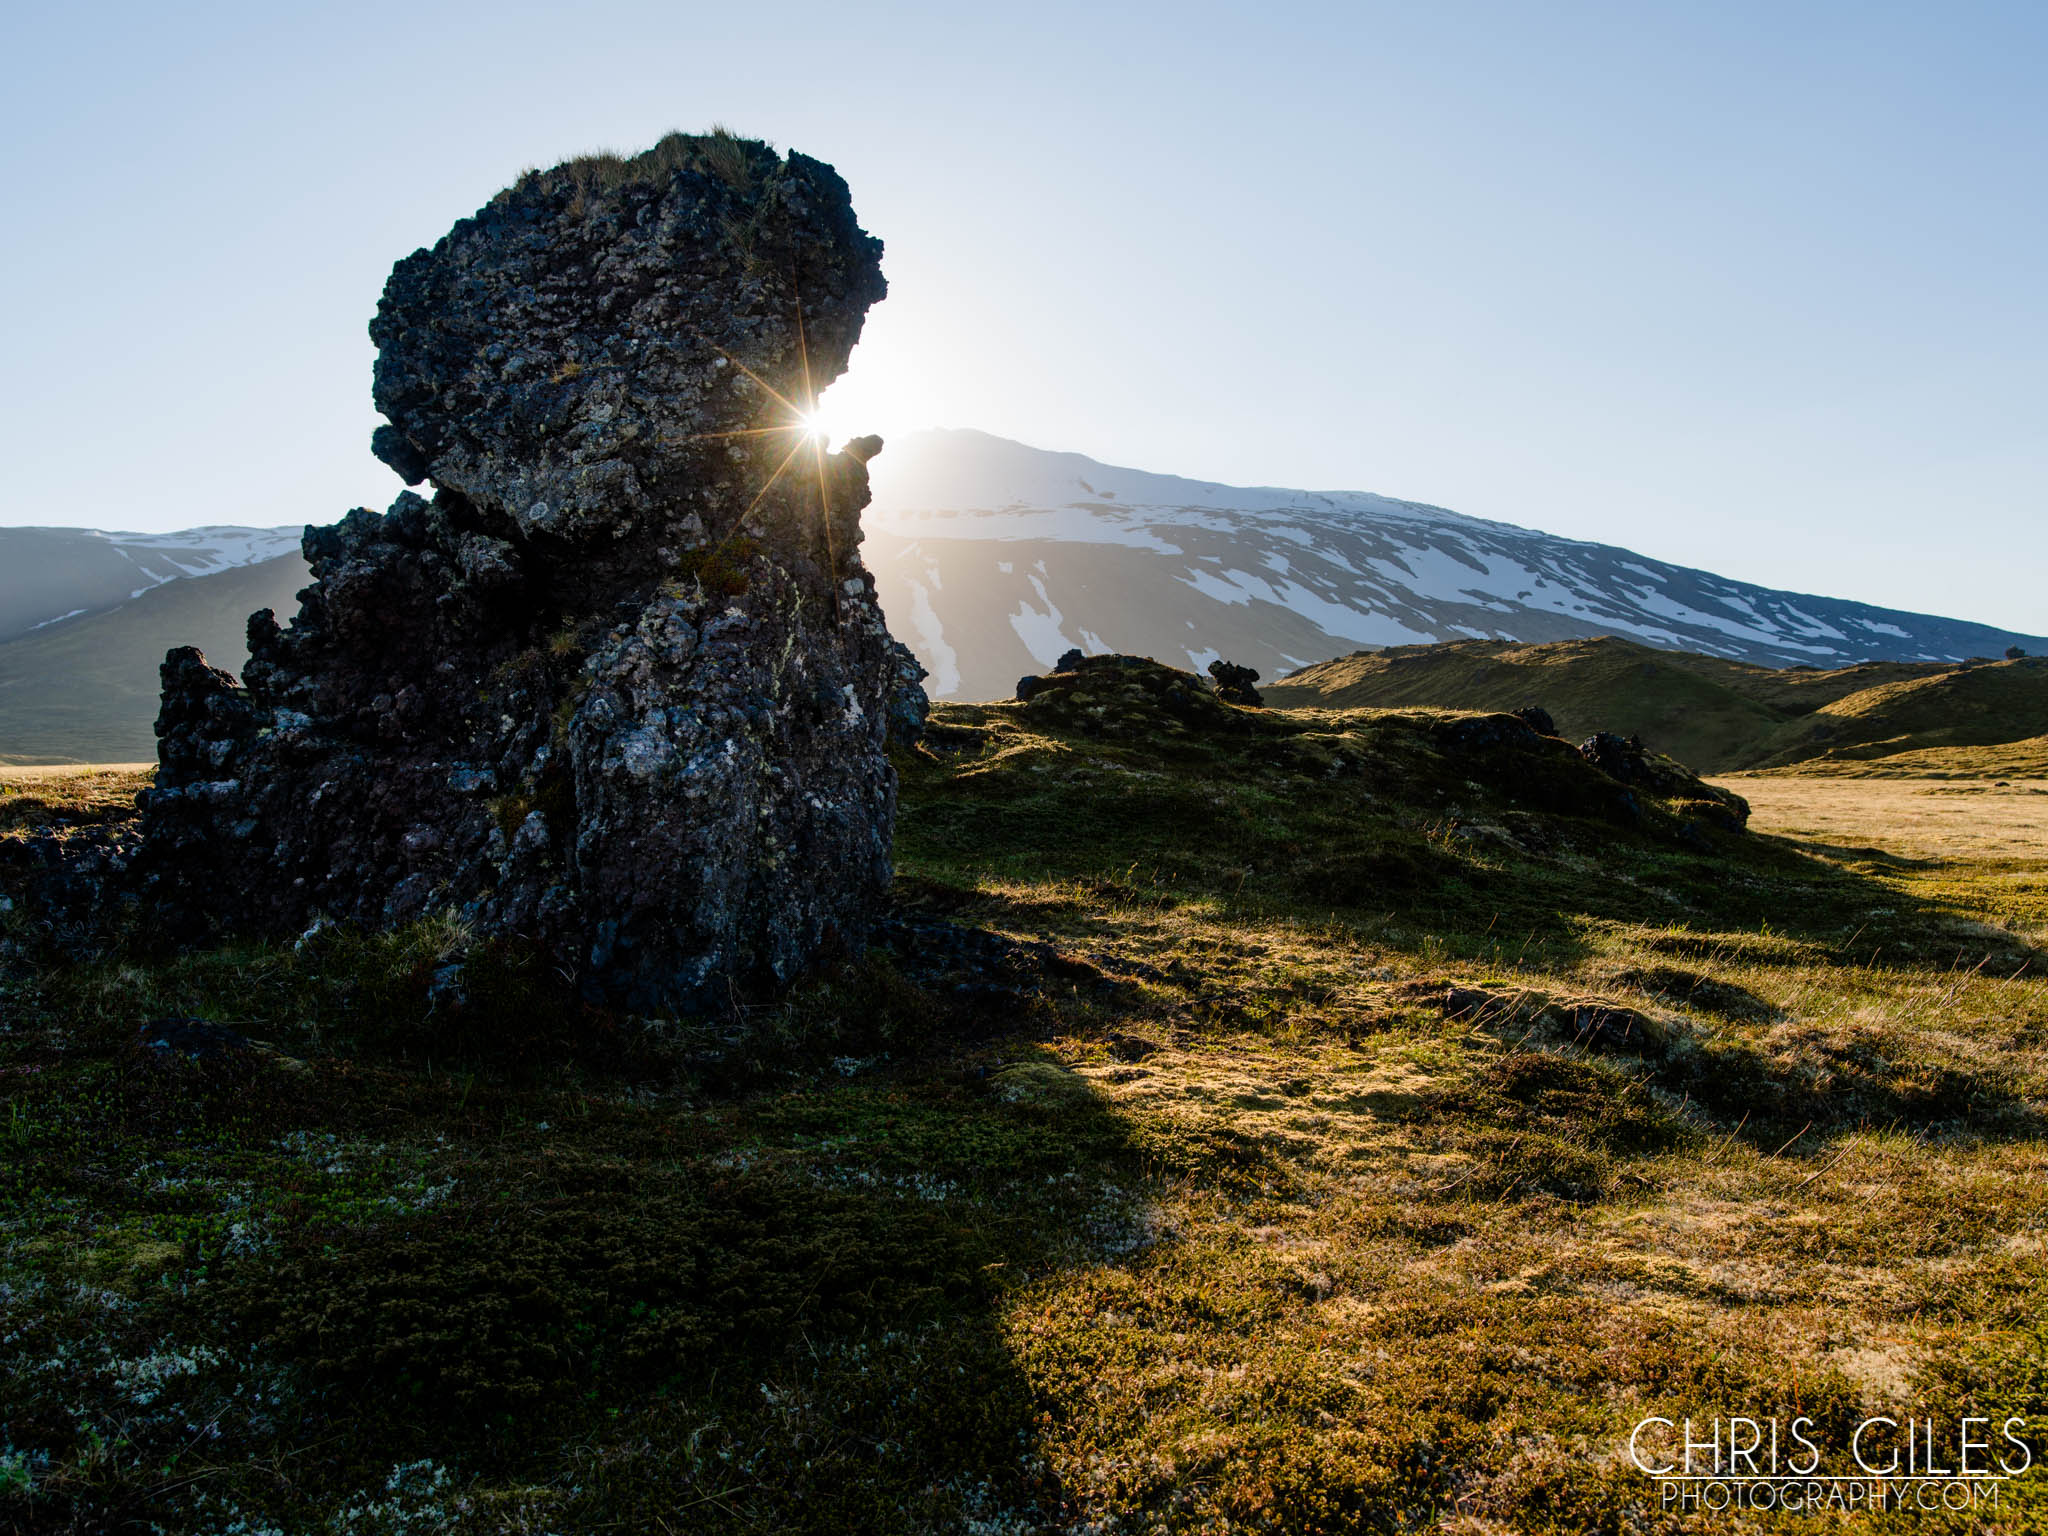 The Sanefellsjokull National Park